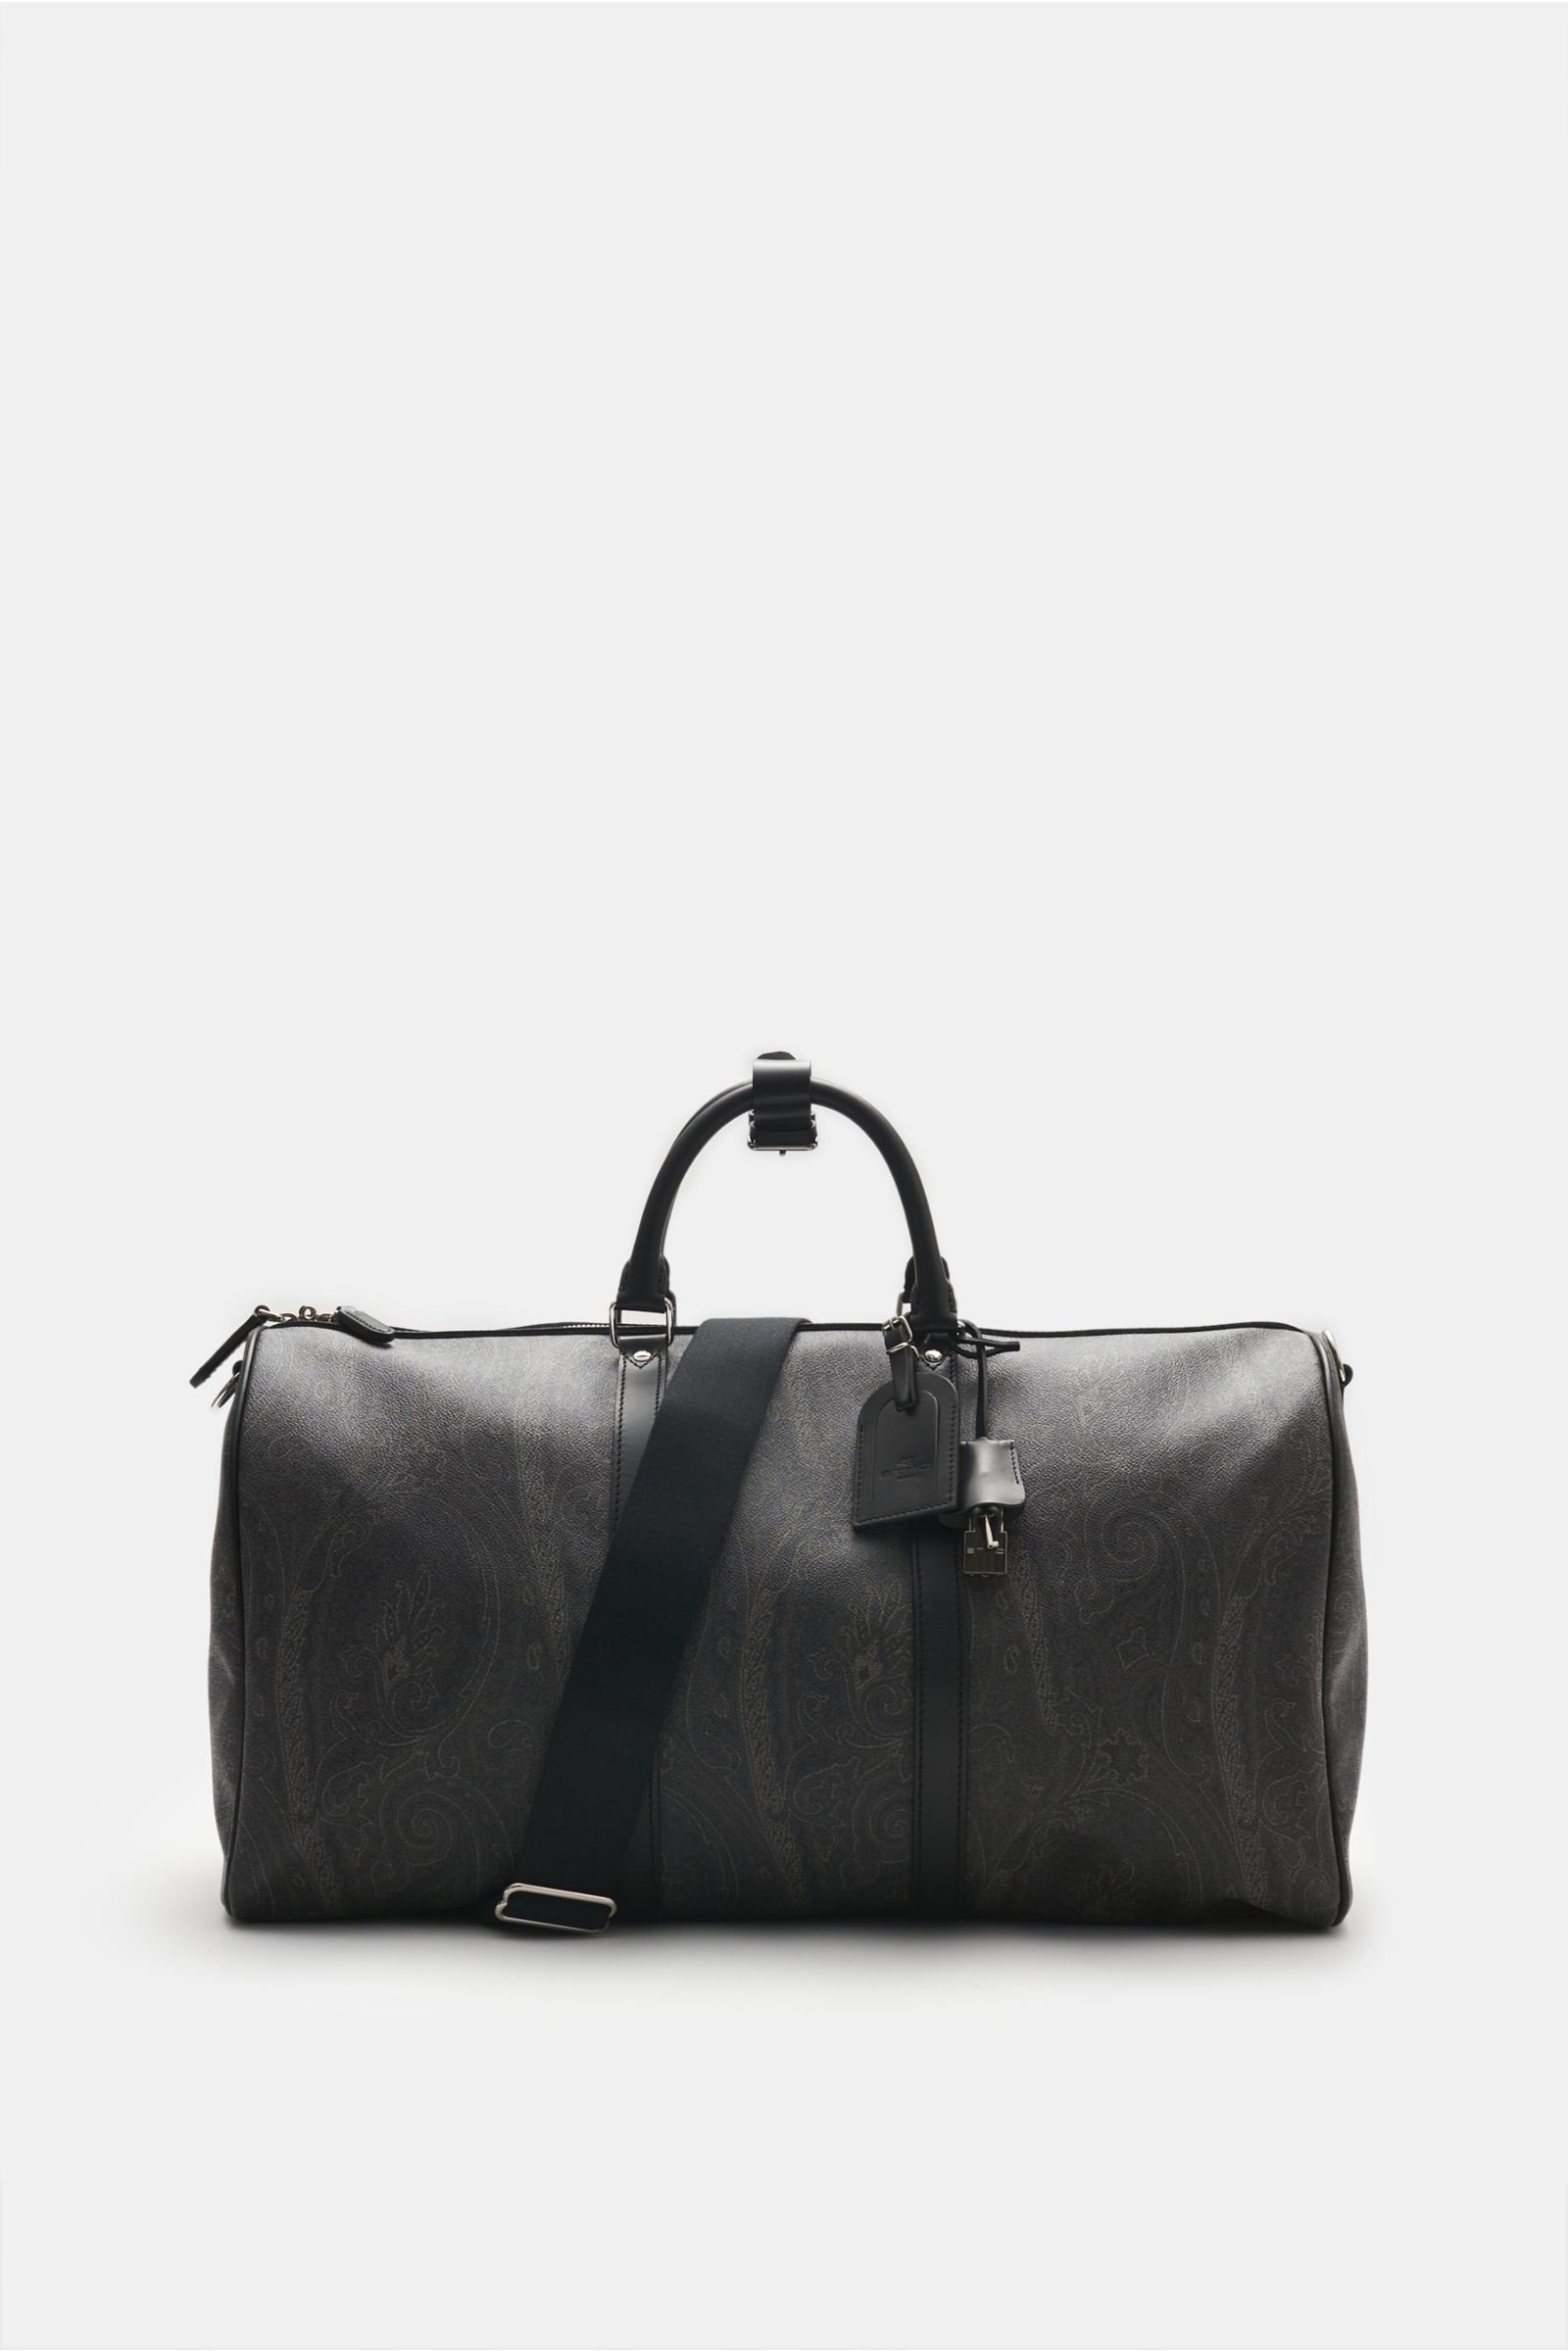 Travel bag black patterned (size XL)